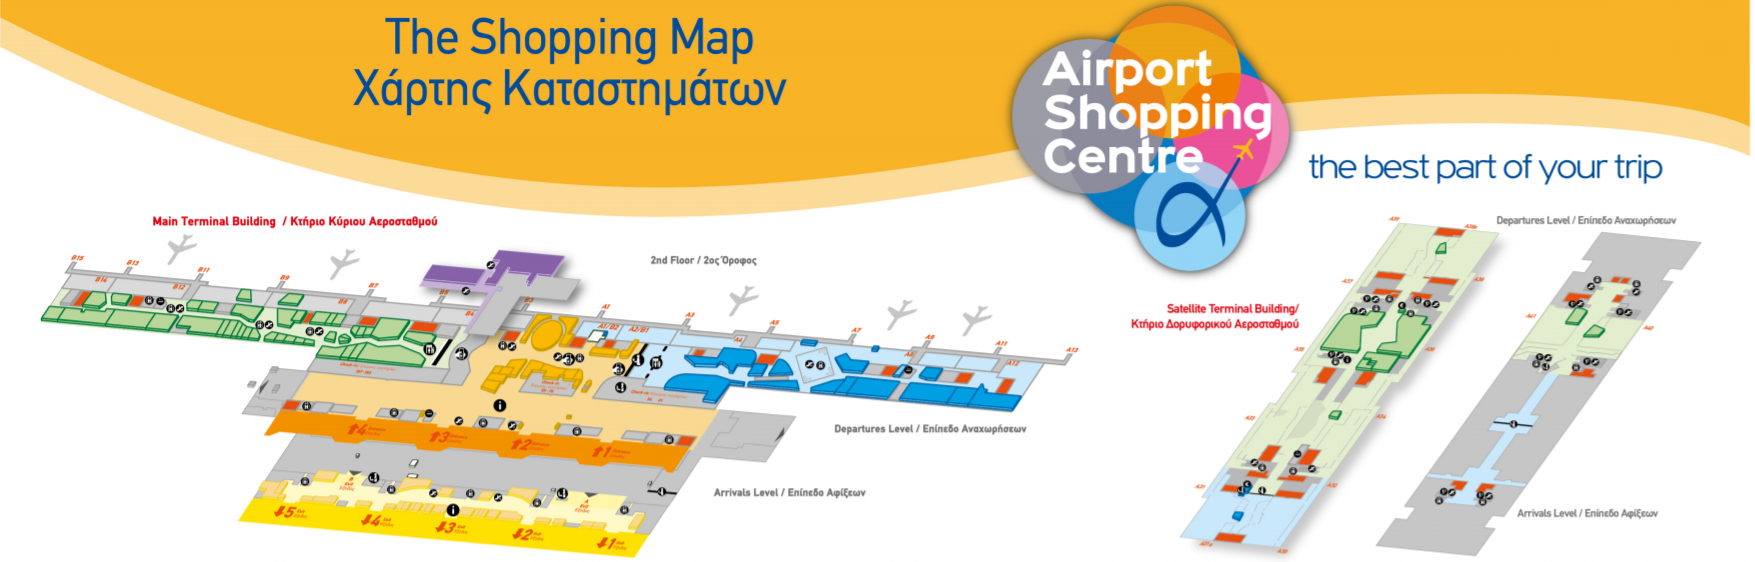 Как добраться до аэропорта афин с центра города?